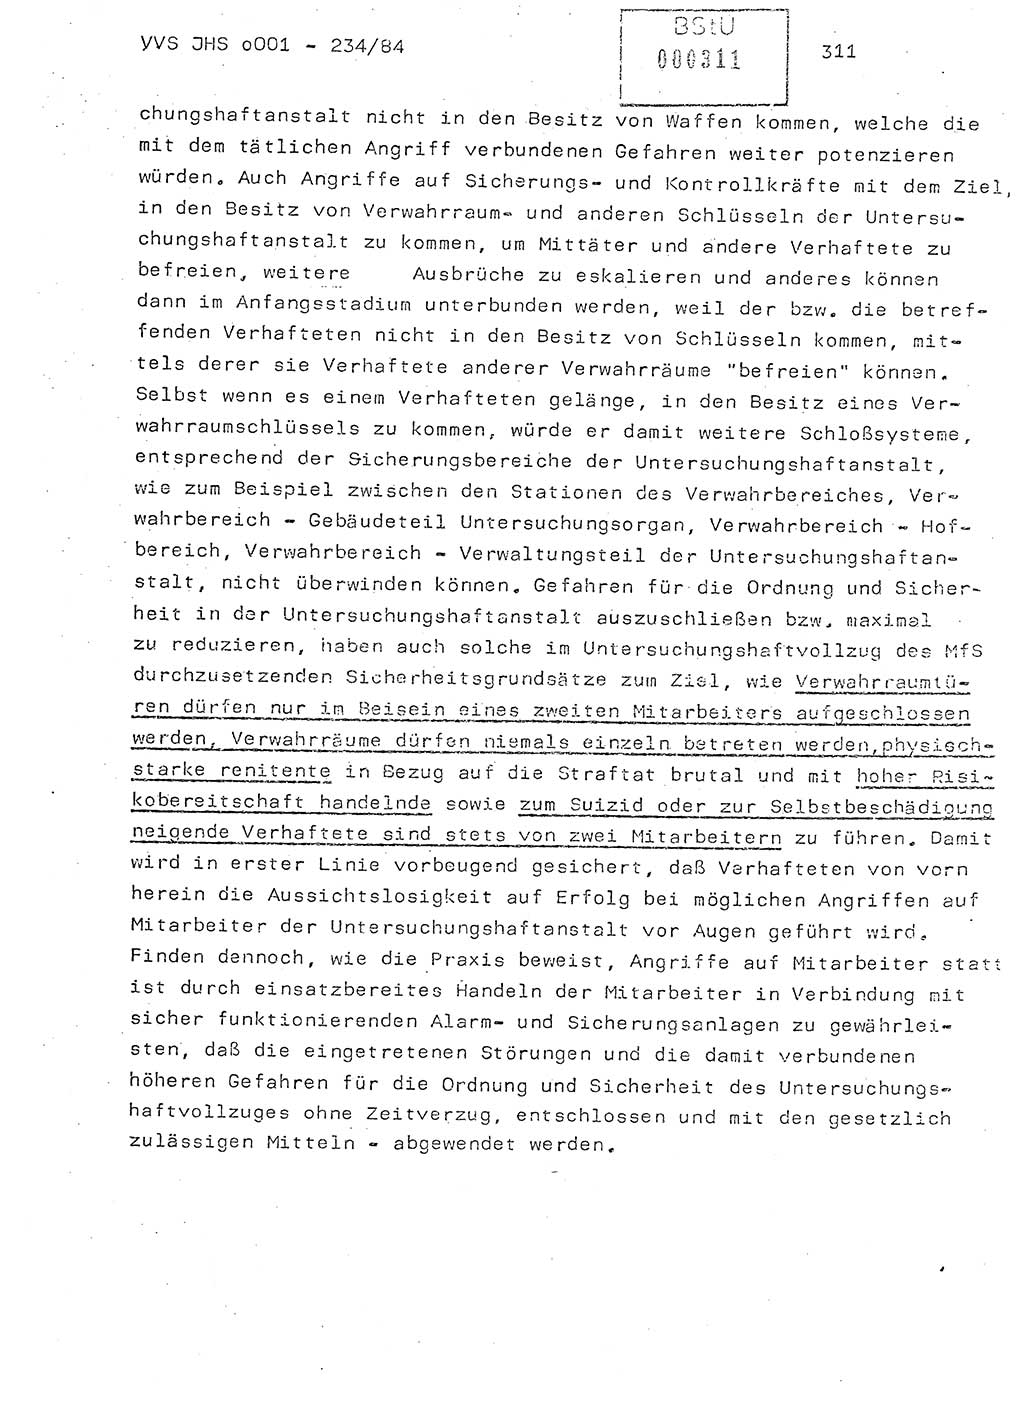 Dissertation Oberst Siegfried Rataizick (Abt. ⅩⅣ), Oberstleutnant Volkmar Heinz (Abt. ⅩⅣ), Oberstleutnant Werner Stein (HA Ⅸ), Hauptmann Heinz Conrad (JHS), Ministerium für Staatssicherheit (MfS) [Deutsche Demokratische Republik (DDR)], Juristische Hochschule (JHS), Vertrauliche Verschlußsache (VVS) o001-234/84, Potsdam 1984, Seite 311 (Diss. MfS DDR JHS VVS o001-234/84 1984, S. 311)